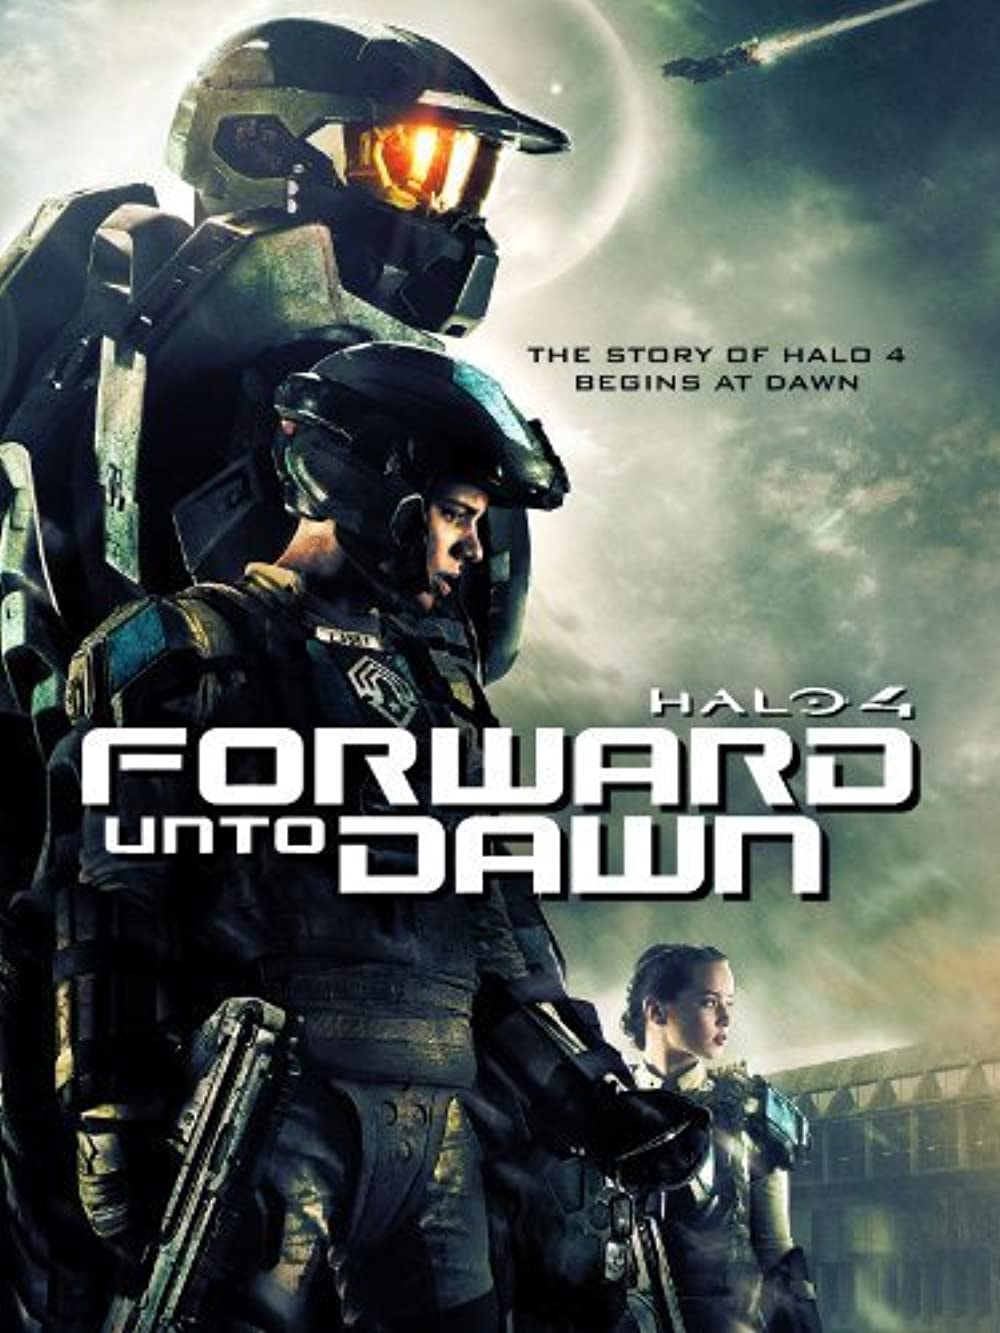 ดูหนังออนไลน์ฟรี Halo 4 Forward Unto Dawn (2012) เฮโล 4 หน่วยฝึกรบมหากาฬ หนังมาสเตอร์ หนังเต็มเรื่อง ดูหนังฟรีออนไลน์ ดูหนังออนไลน์ หนังออนไลน์ ดูหนังใหม่ หนังพากย์ไทย หนังซับไทย ดูฟรีHD